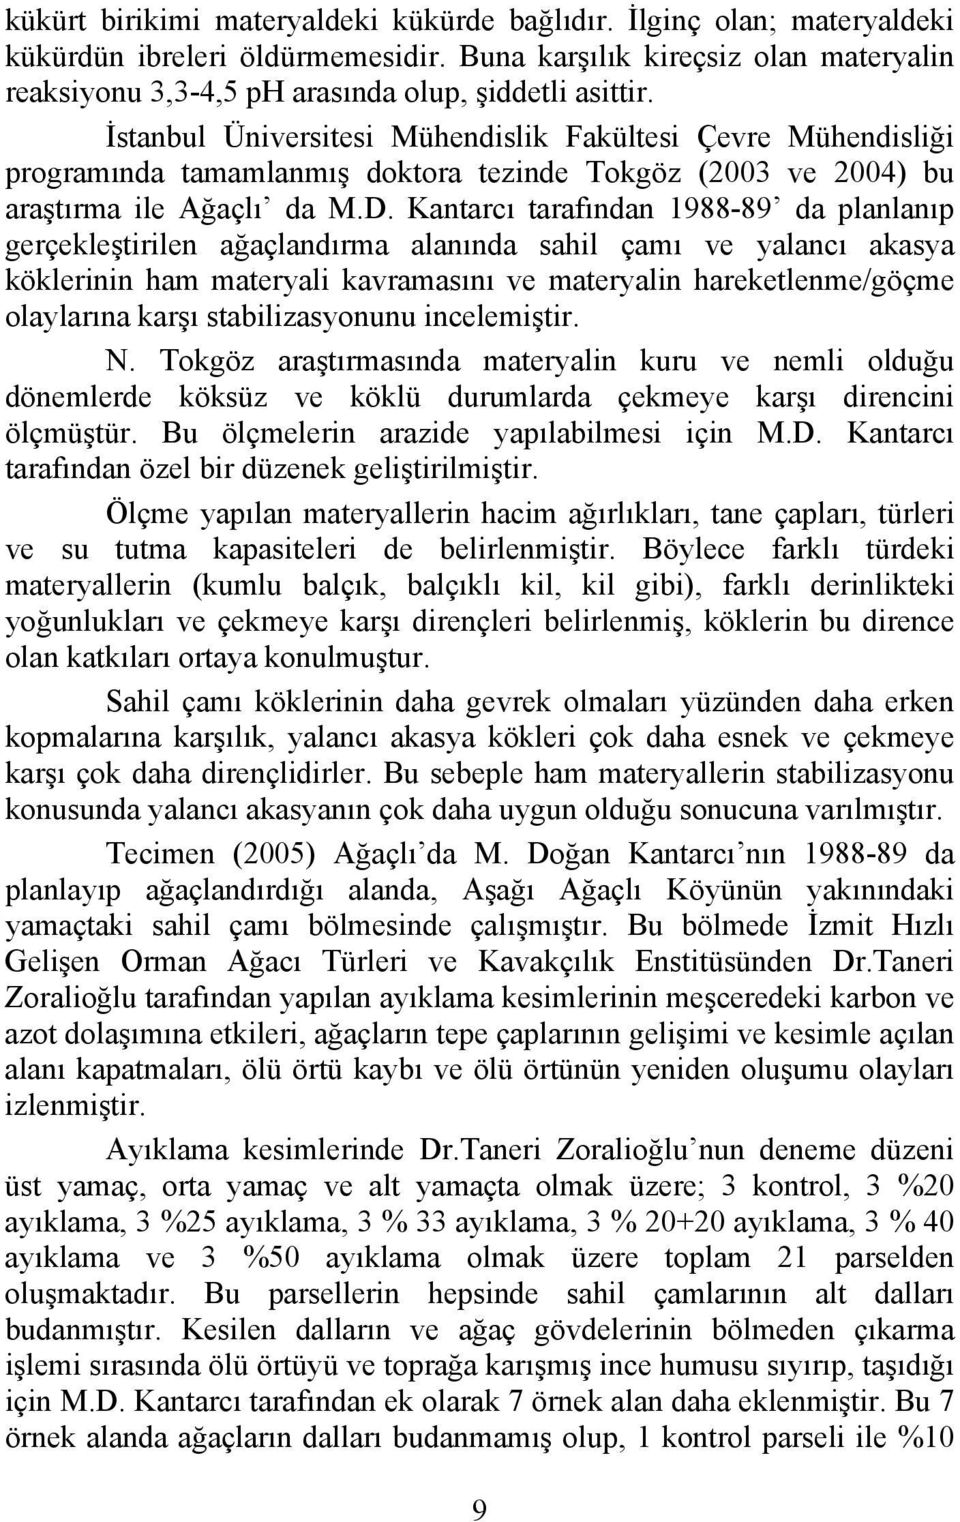 Kantarcı tarafından 1988-89 da planlanıp gerçekleştirilen ağaçlandırma alanında sahil çamı ve yalancı akasya köklerinin ham materyali kavramasını ve materyalin hareketlenme/göçme olaylarına karşı